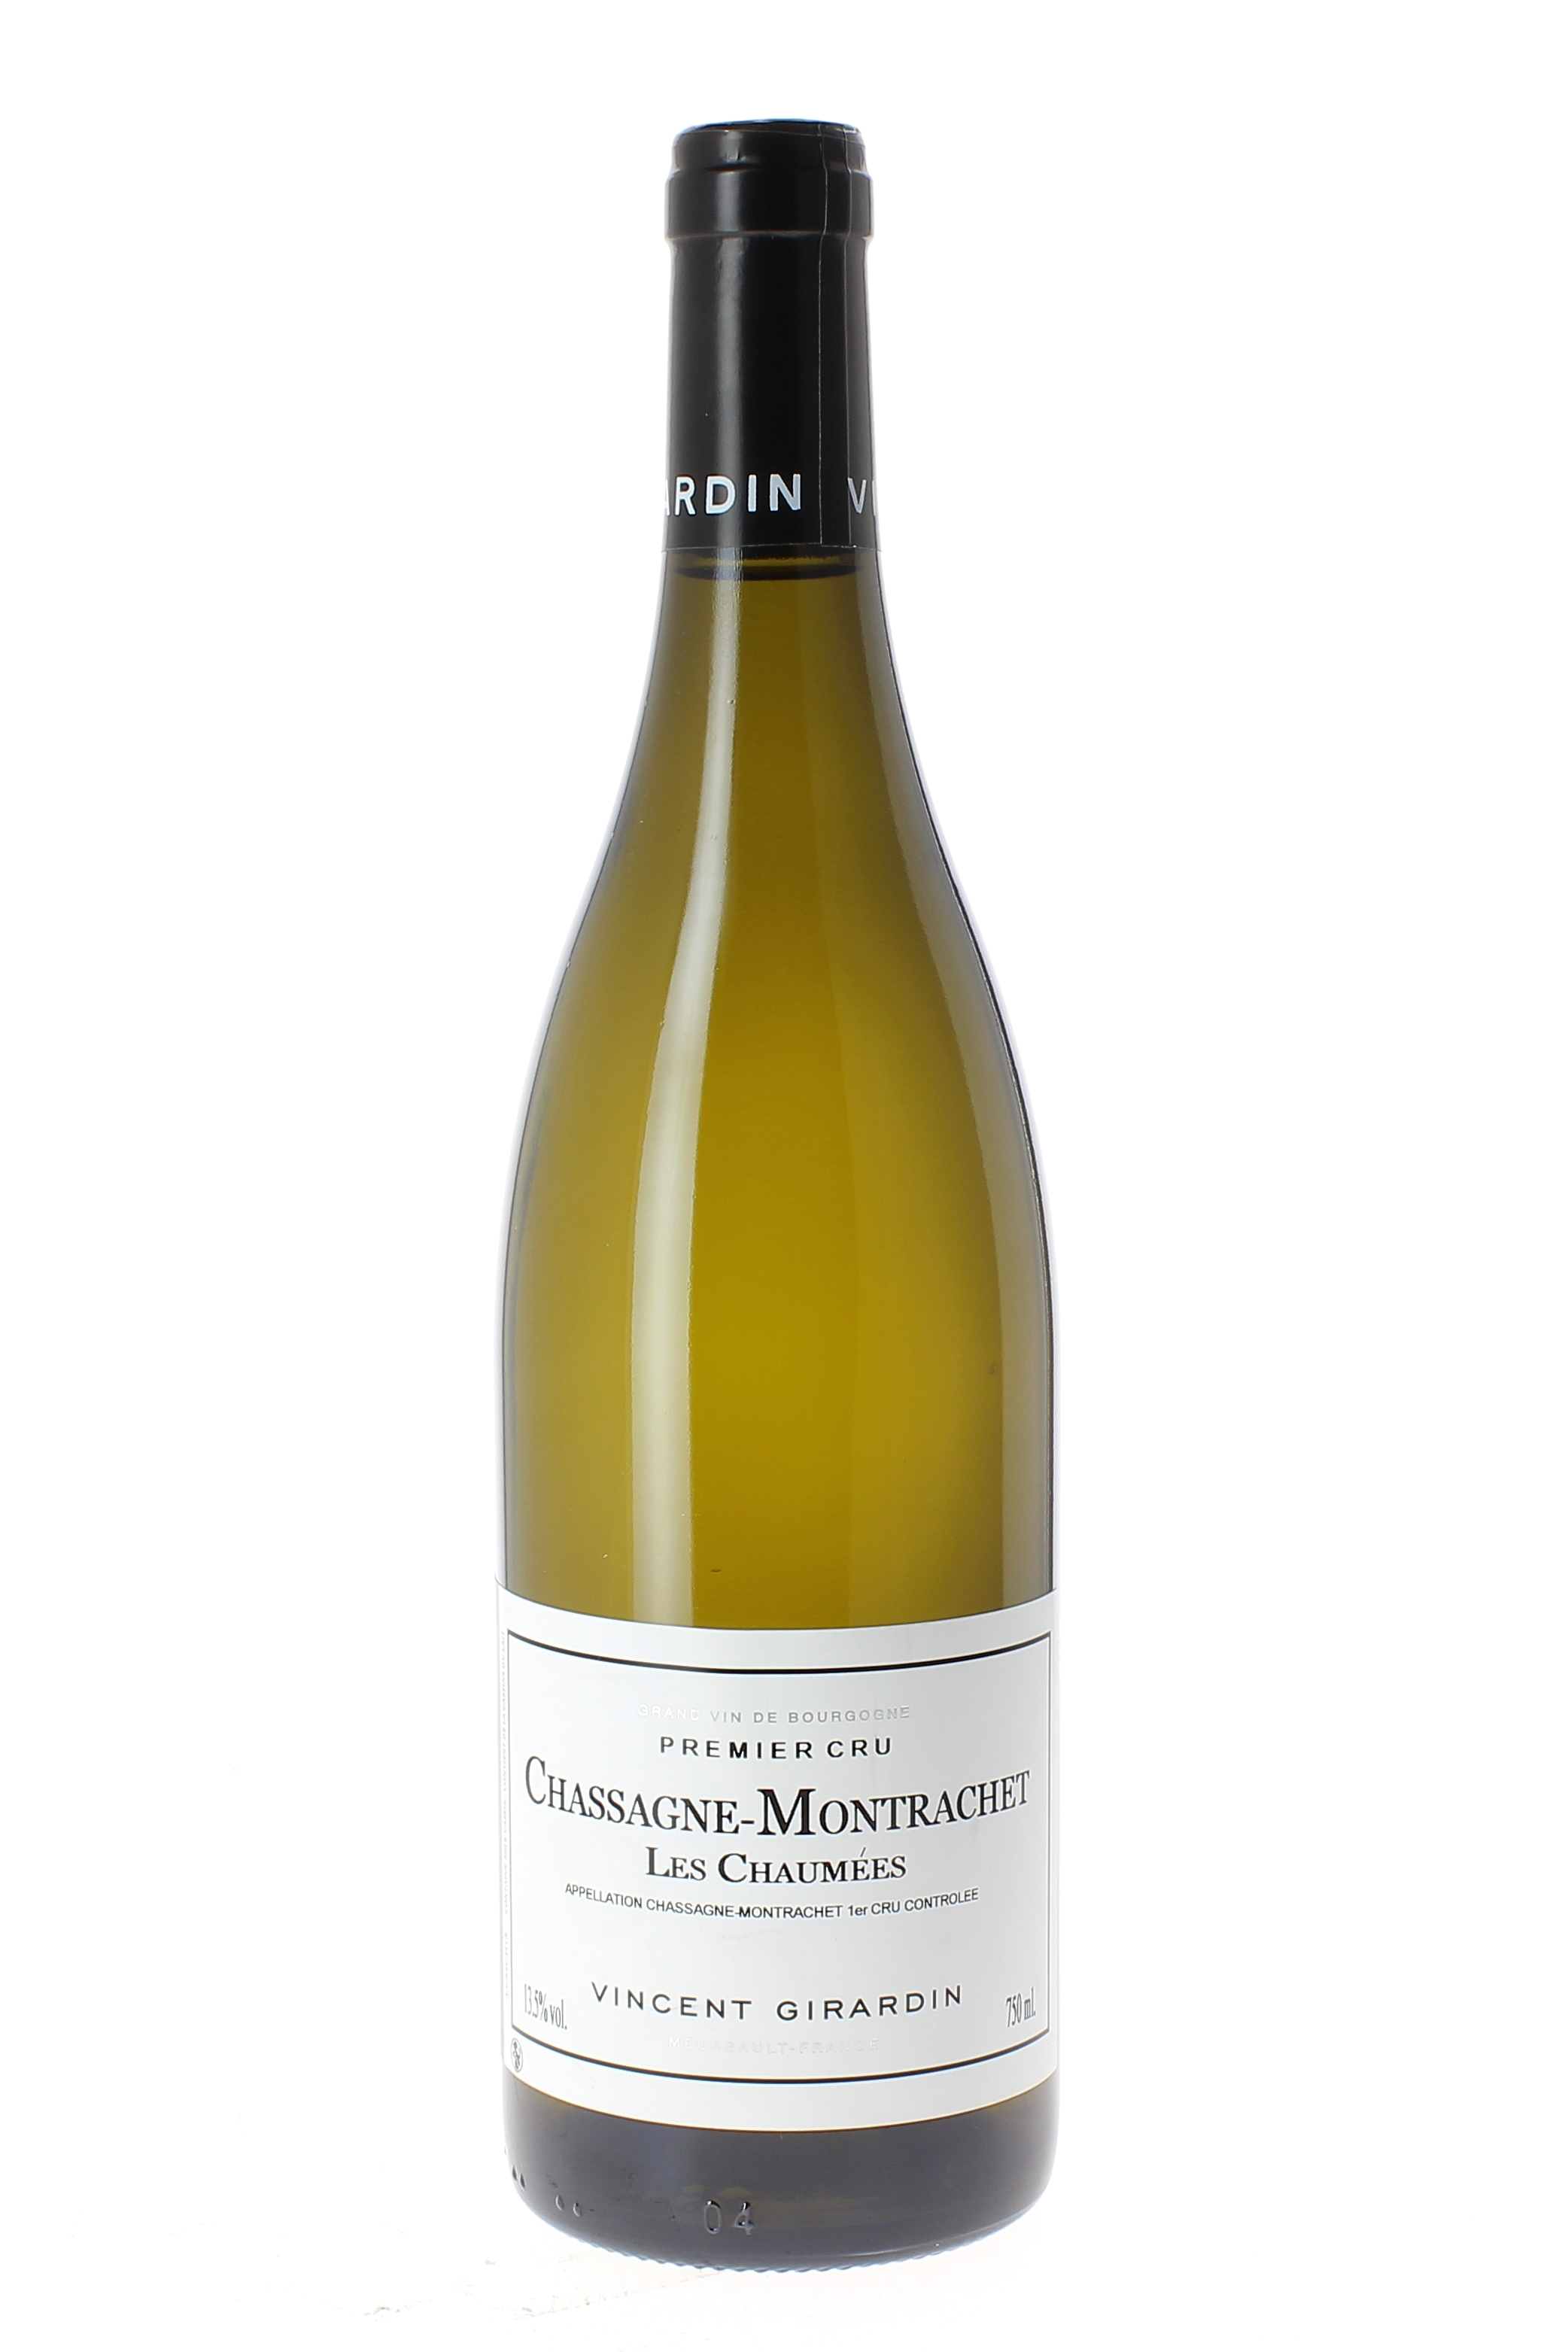 Chassagne montrachet 1er cru les chaumes 2015 Domaine GIRARDIN Vincent, Bourgogne blanc